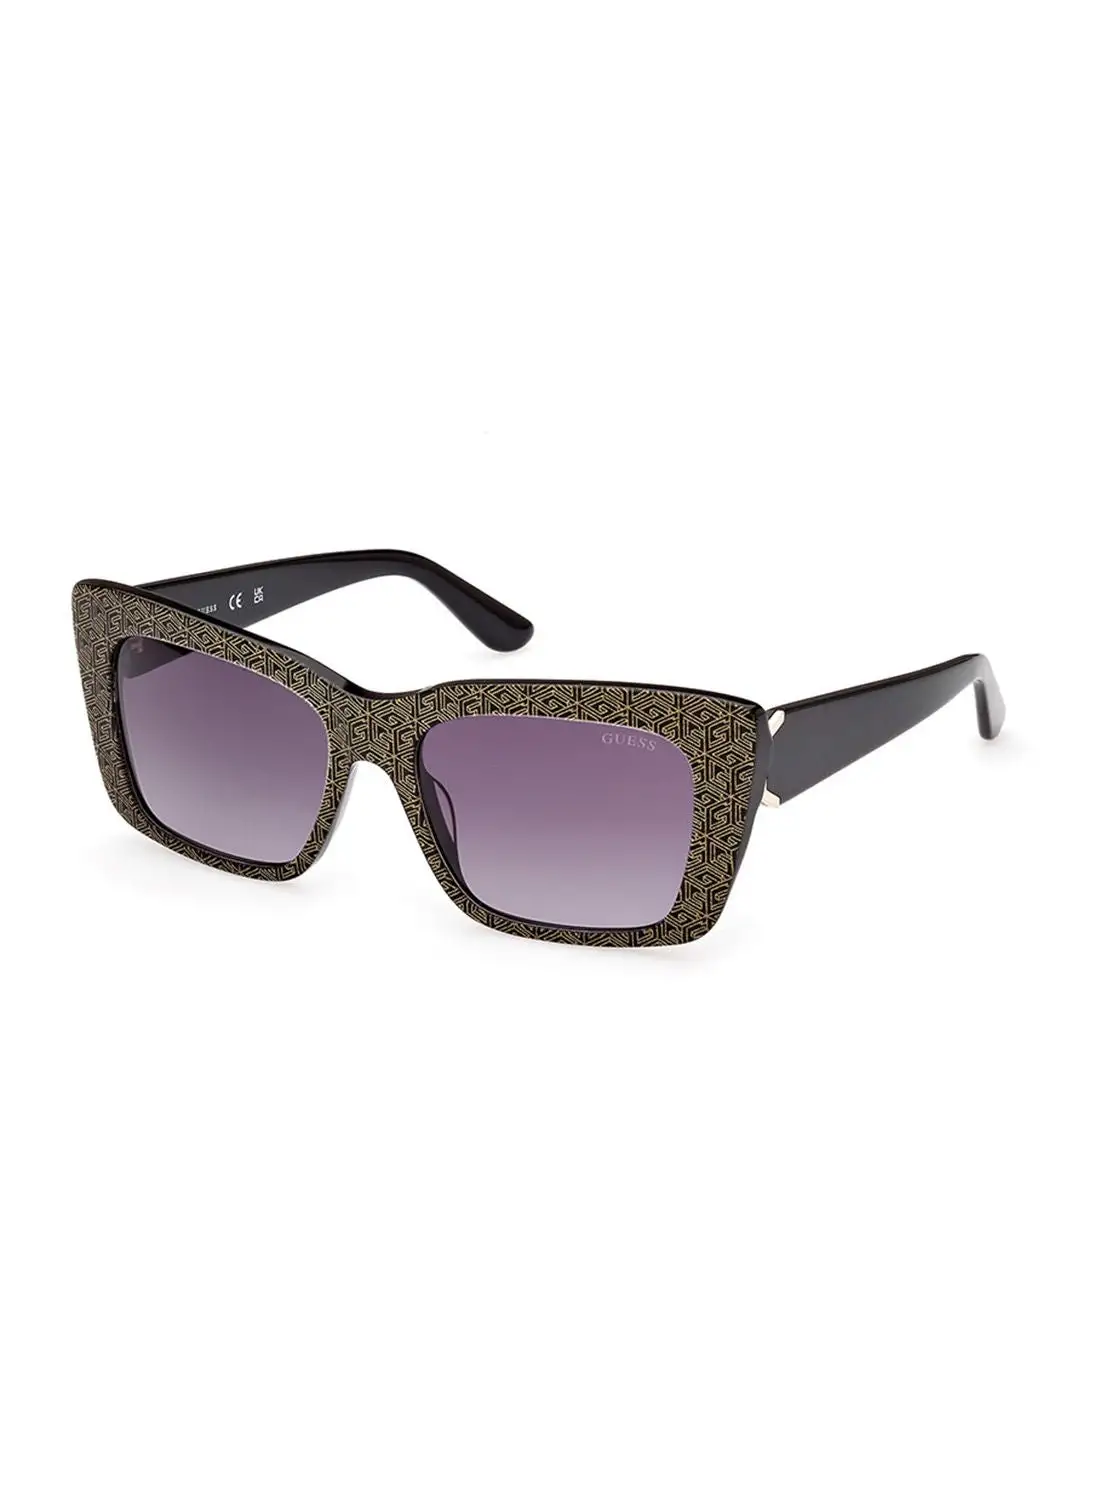 GUESS Sunglasses For Women GU789001B55